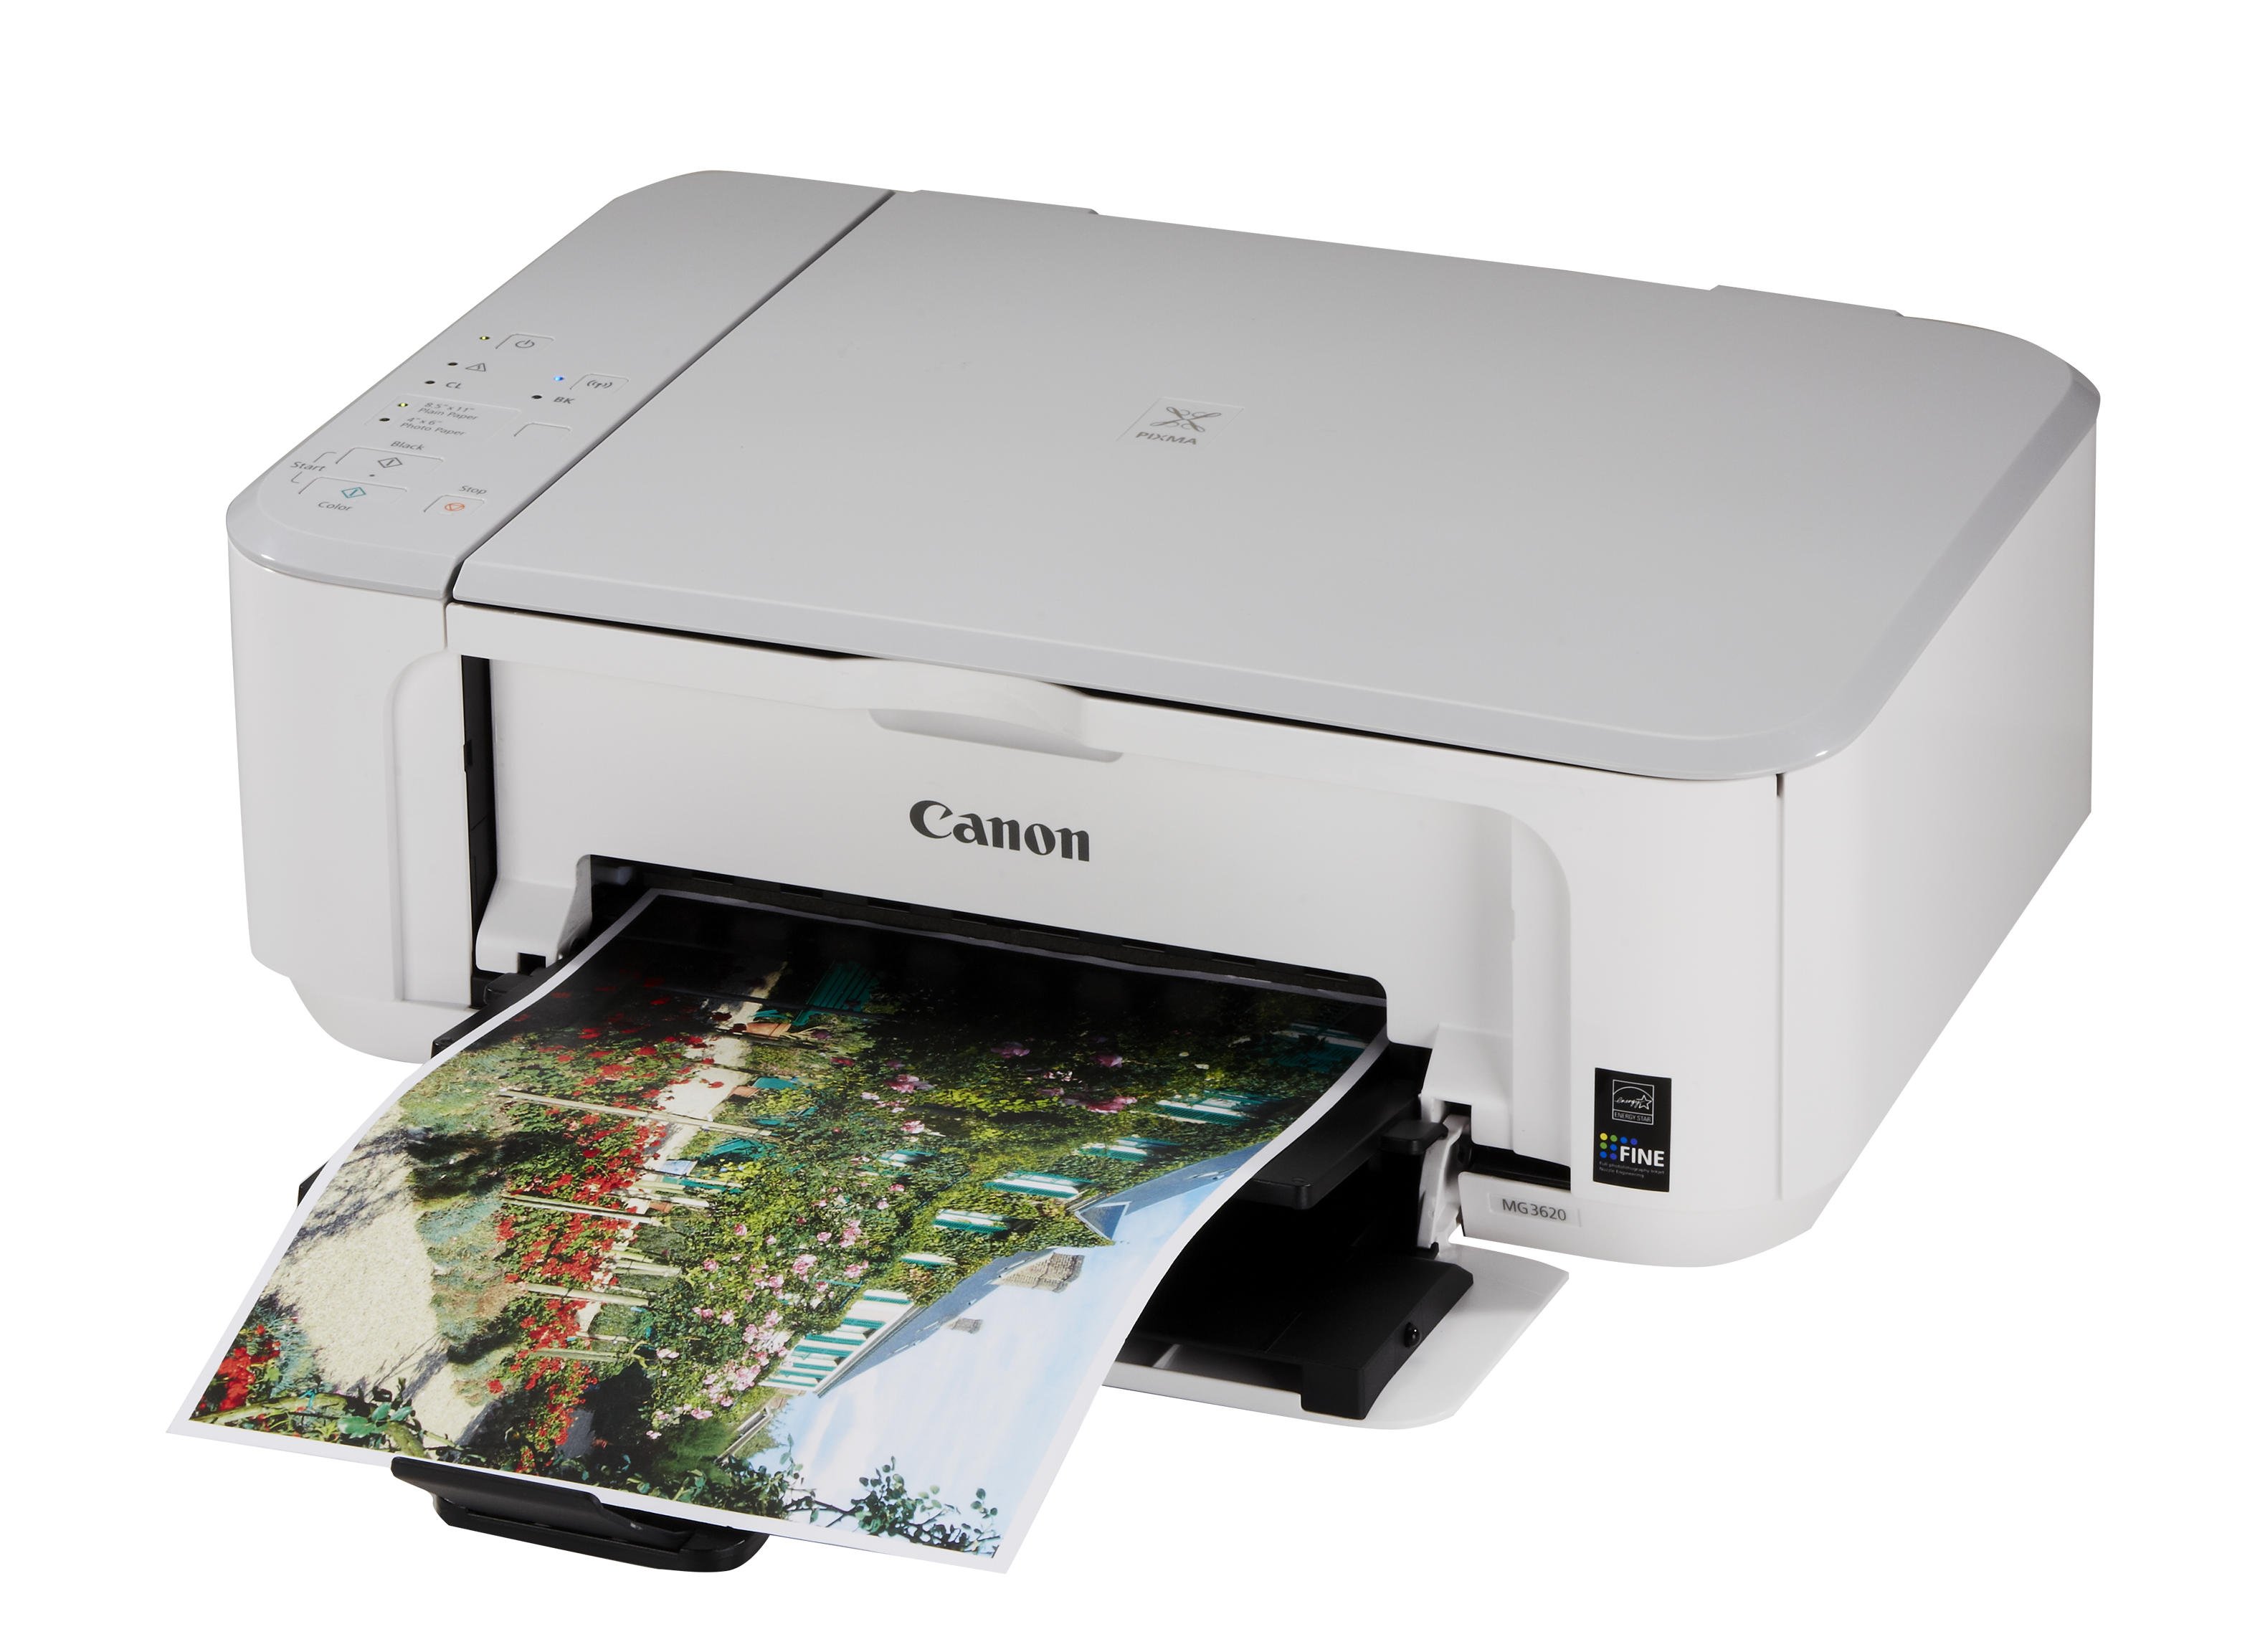 Принтер Canon mg3600. Принтер Canon PIXMA mg3600. Принтер Canon PIXMA mg3650s. Mg3600 Canon 3640. Принтеры canon pixma отзывы